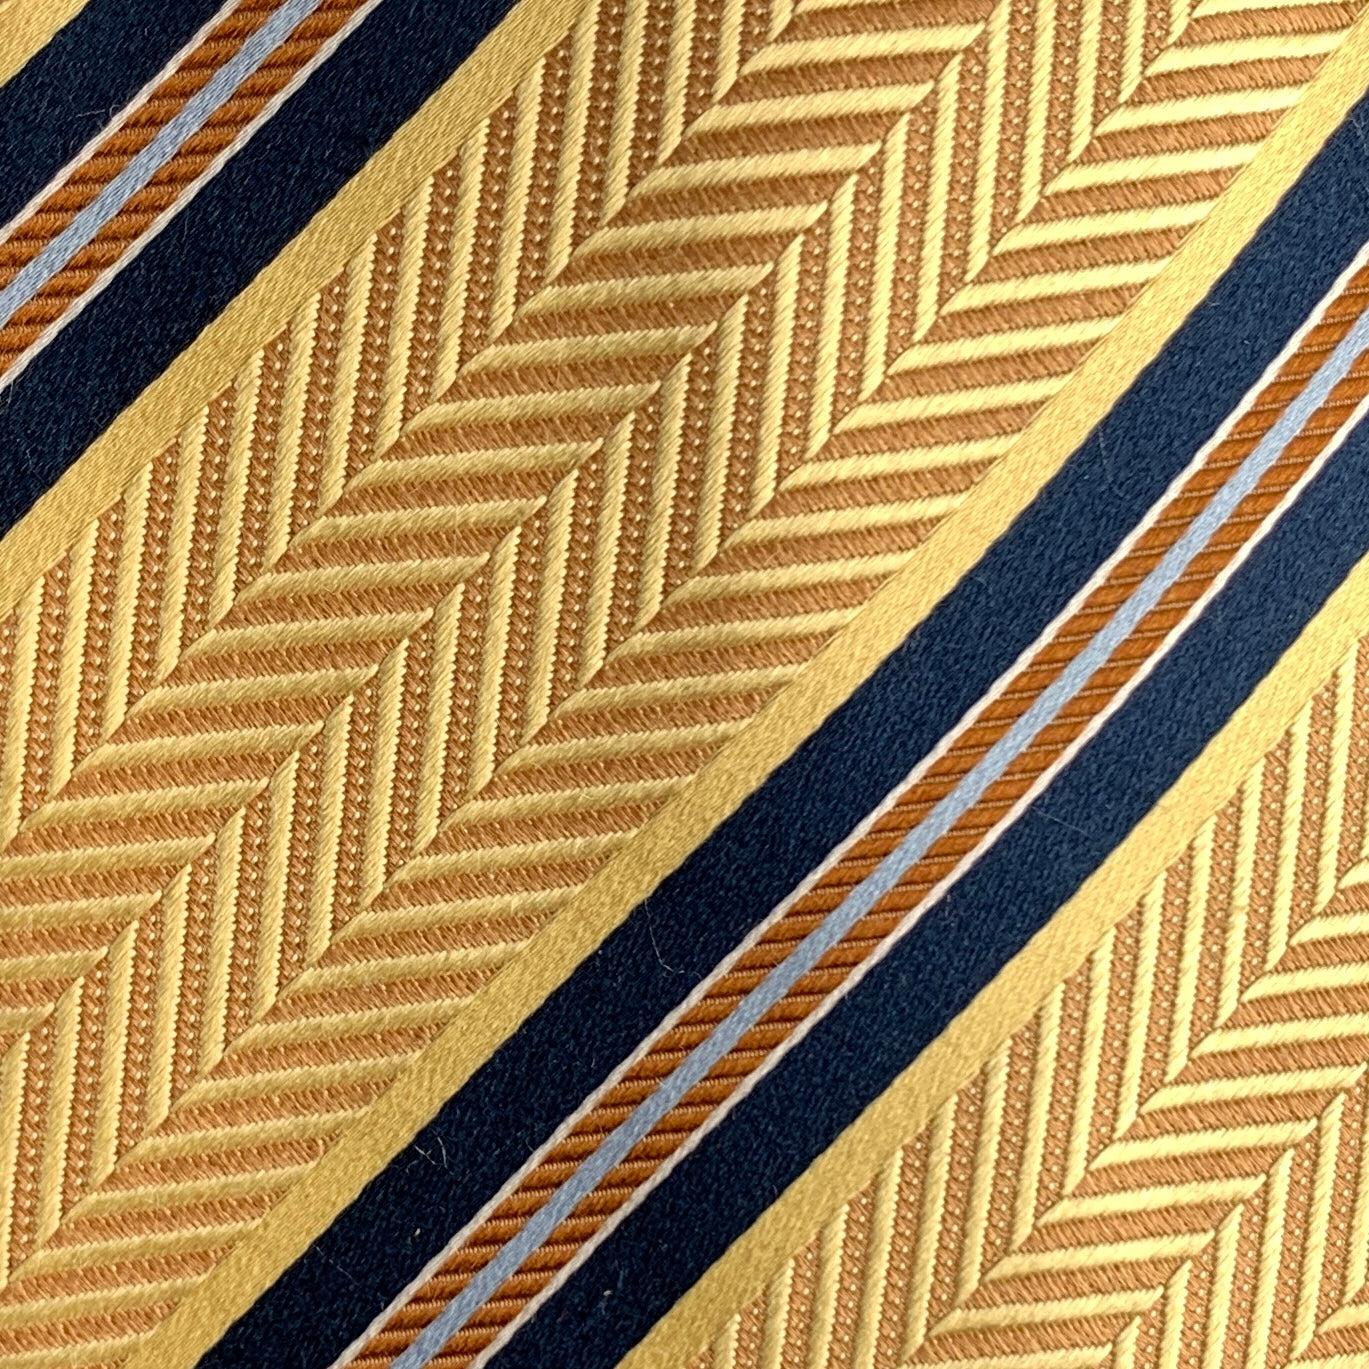 Vintage-Krawatte von ERMENEGILDO ZEGNA mit diagonalen Chevron-Streifen in Gelb und Marineblau. 100% Seide. Hergestellt in Italien.
Sehr guter gebrauchter Zustand.
 

Abmessungen: 
  Breite: 3 Zoll Länge: 58 Zoll 




  
  
 
Sui Generis-Referenz: